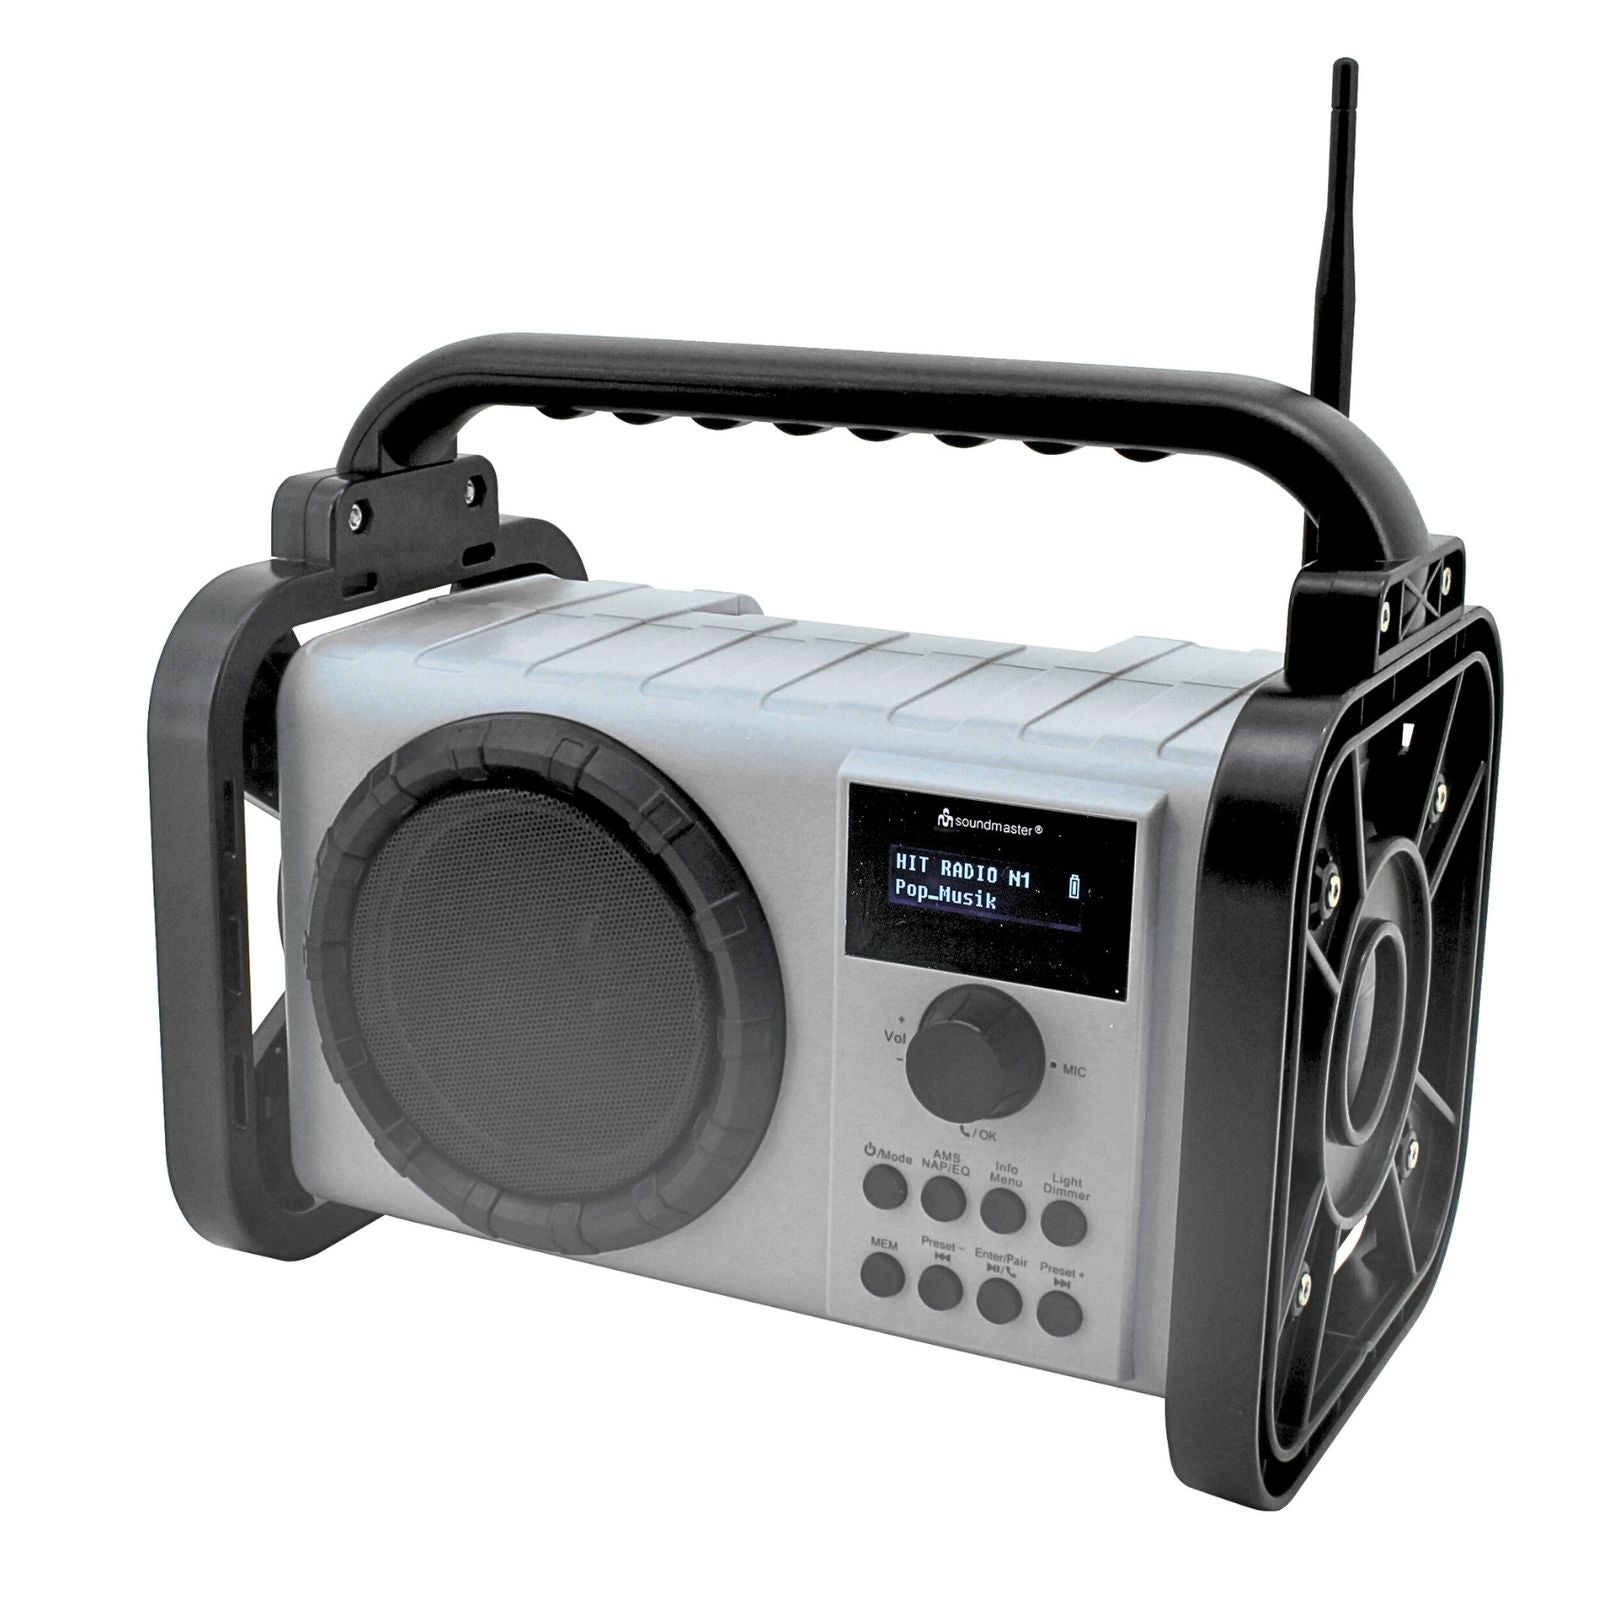 Soundmaster DAB80SG Baustellenradio Baustellenradio Gartenradio Digitalradio DAB+ UKW-RDS Bluetooth Li-Ion Akku IP44 staub- und spritzwassergeschützt